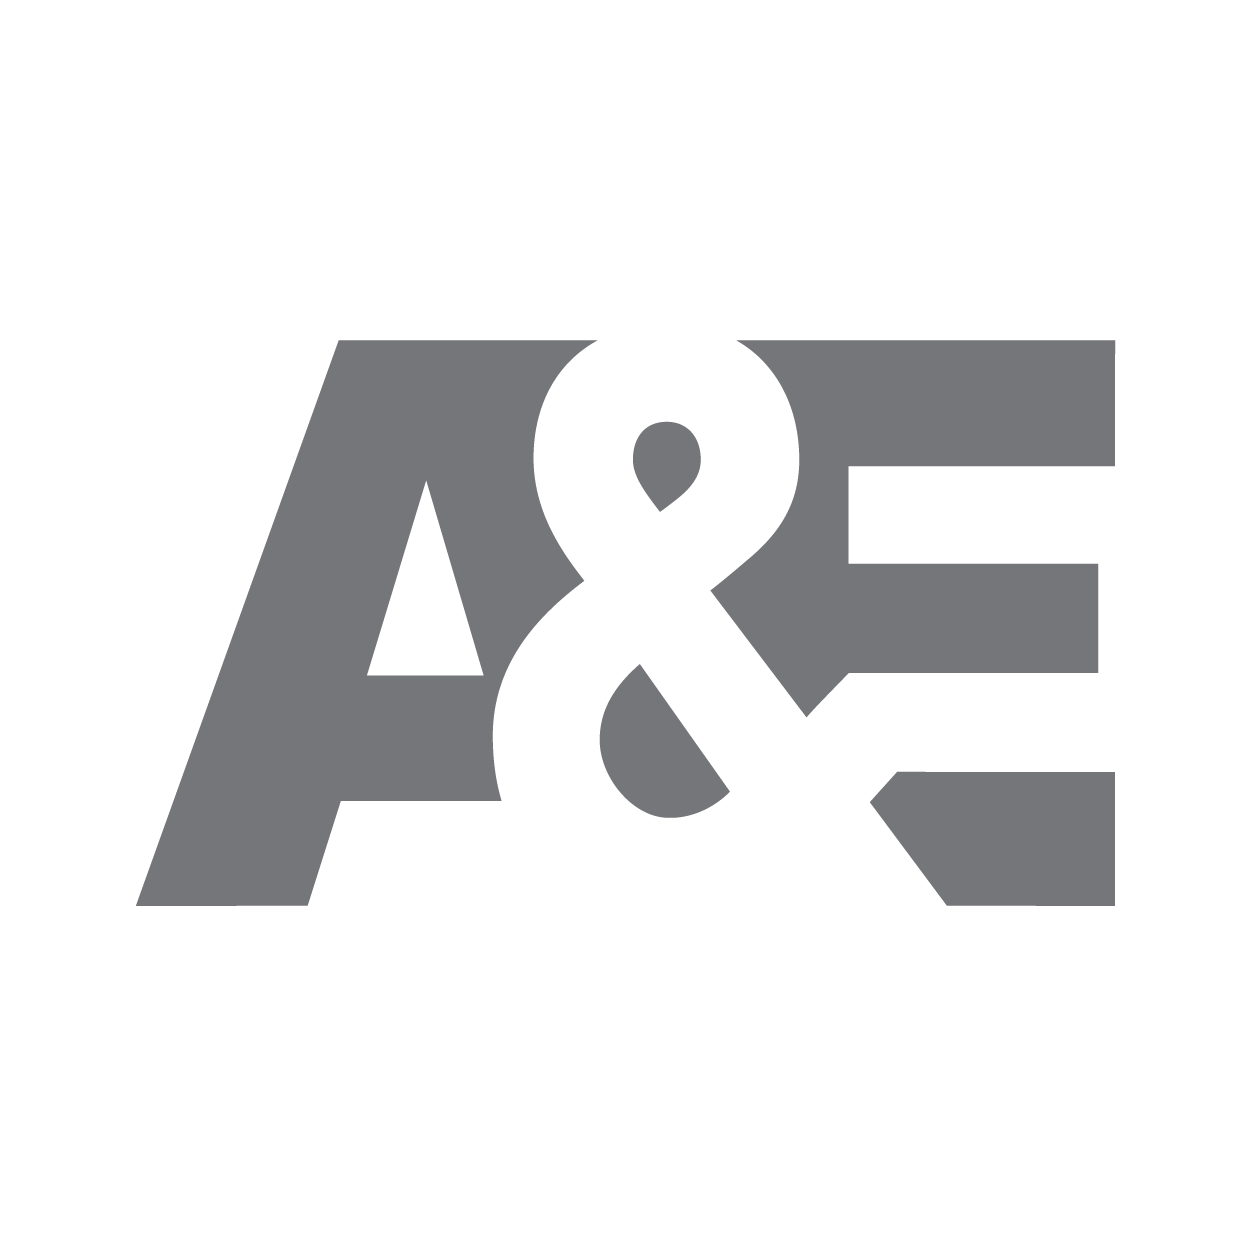 A&E logo in grey